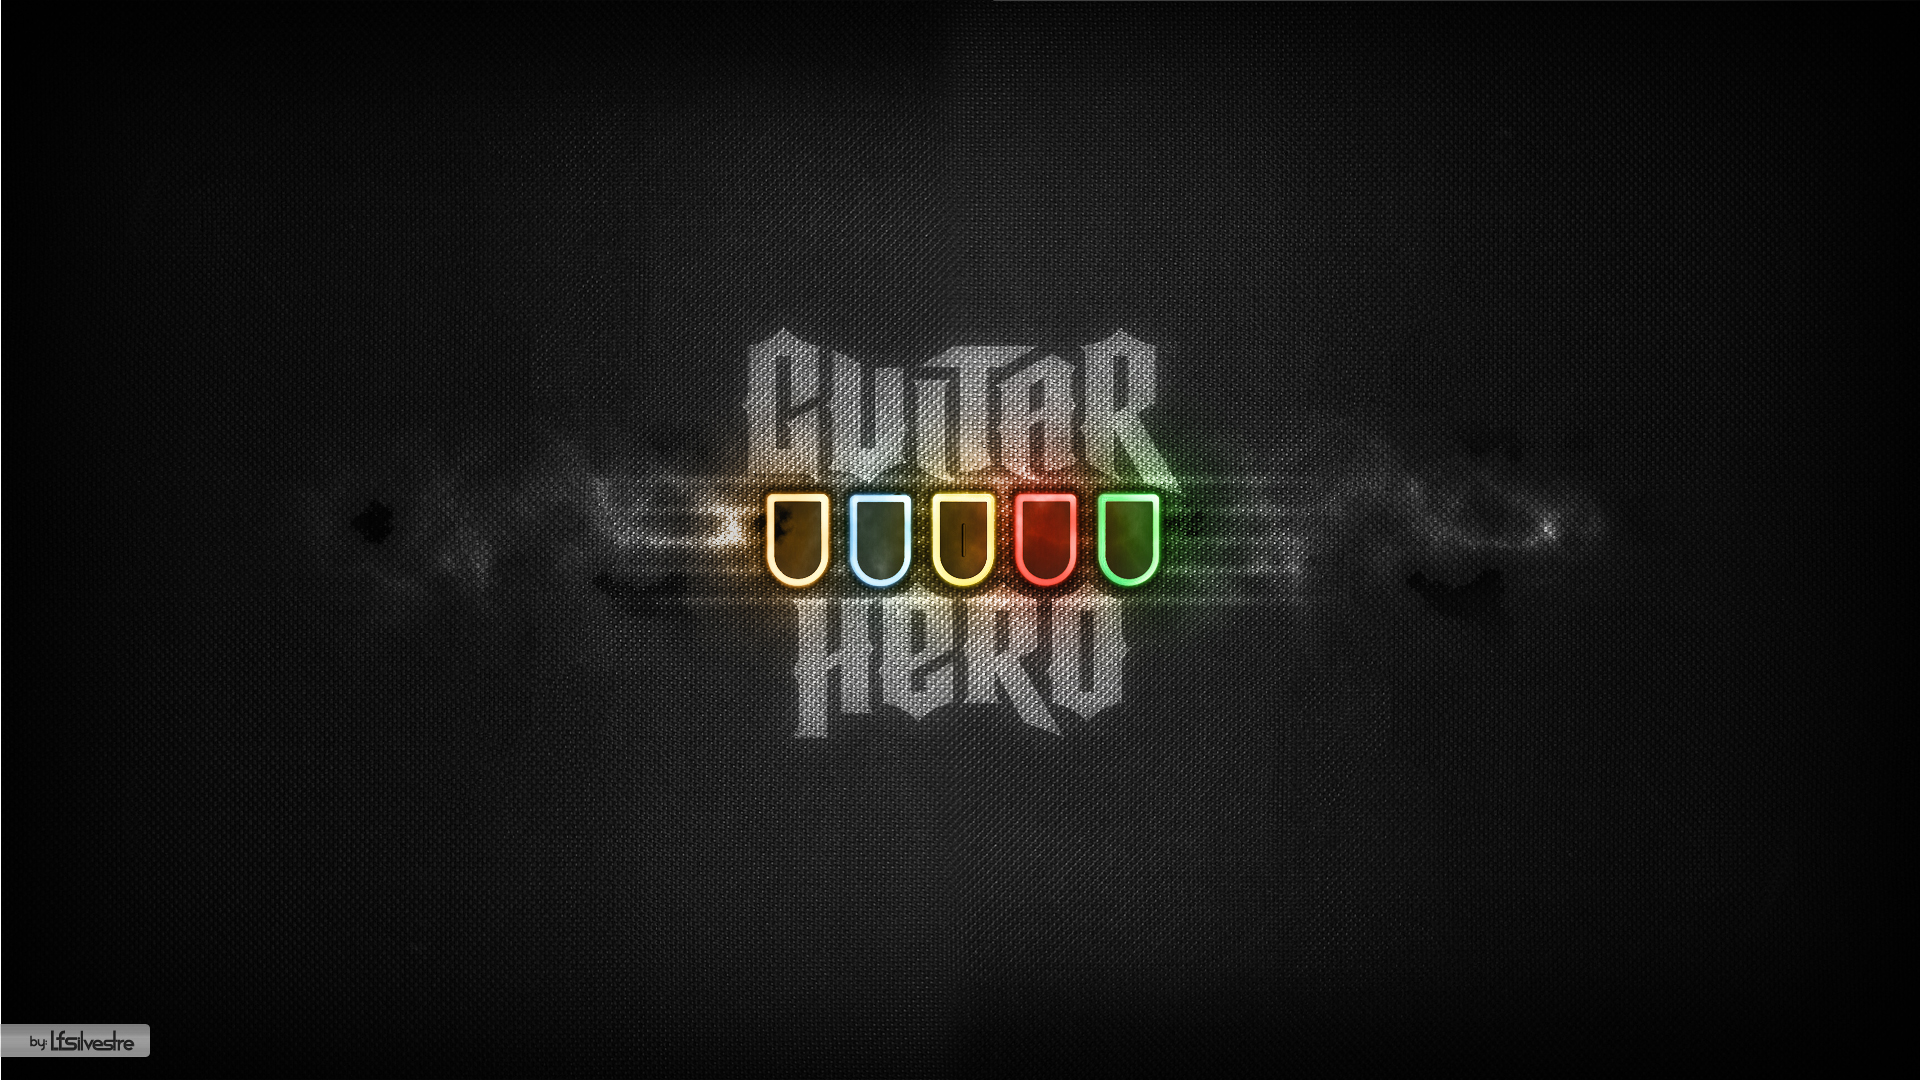 Video Game Guitar Hero 1920x1080